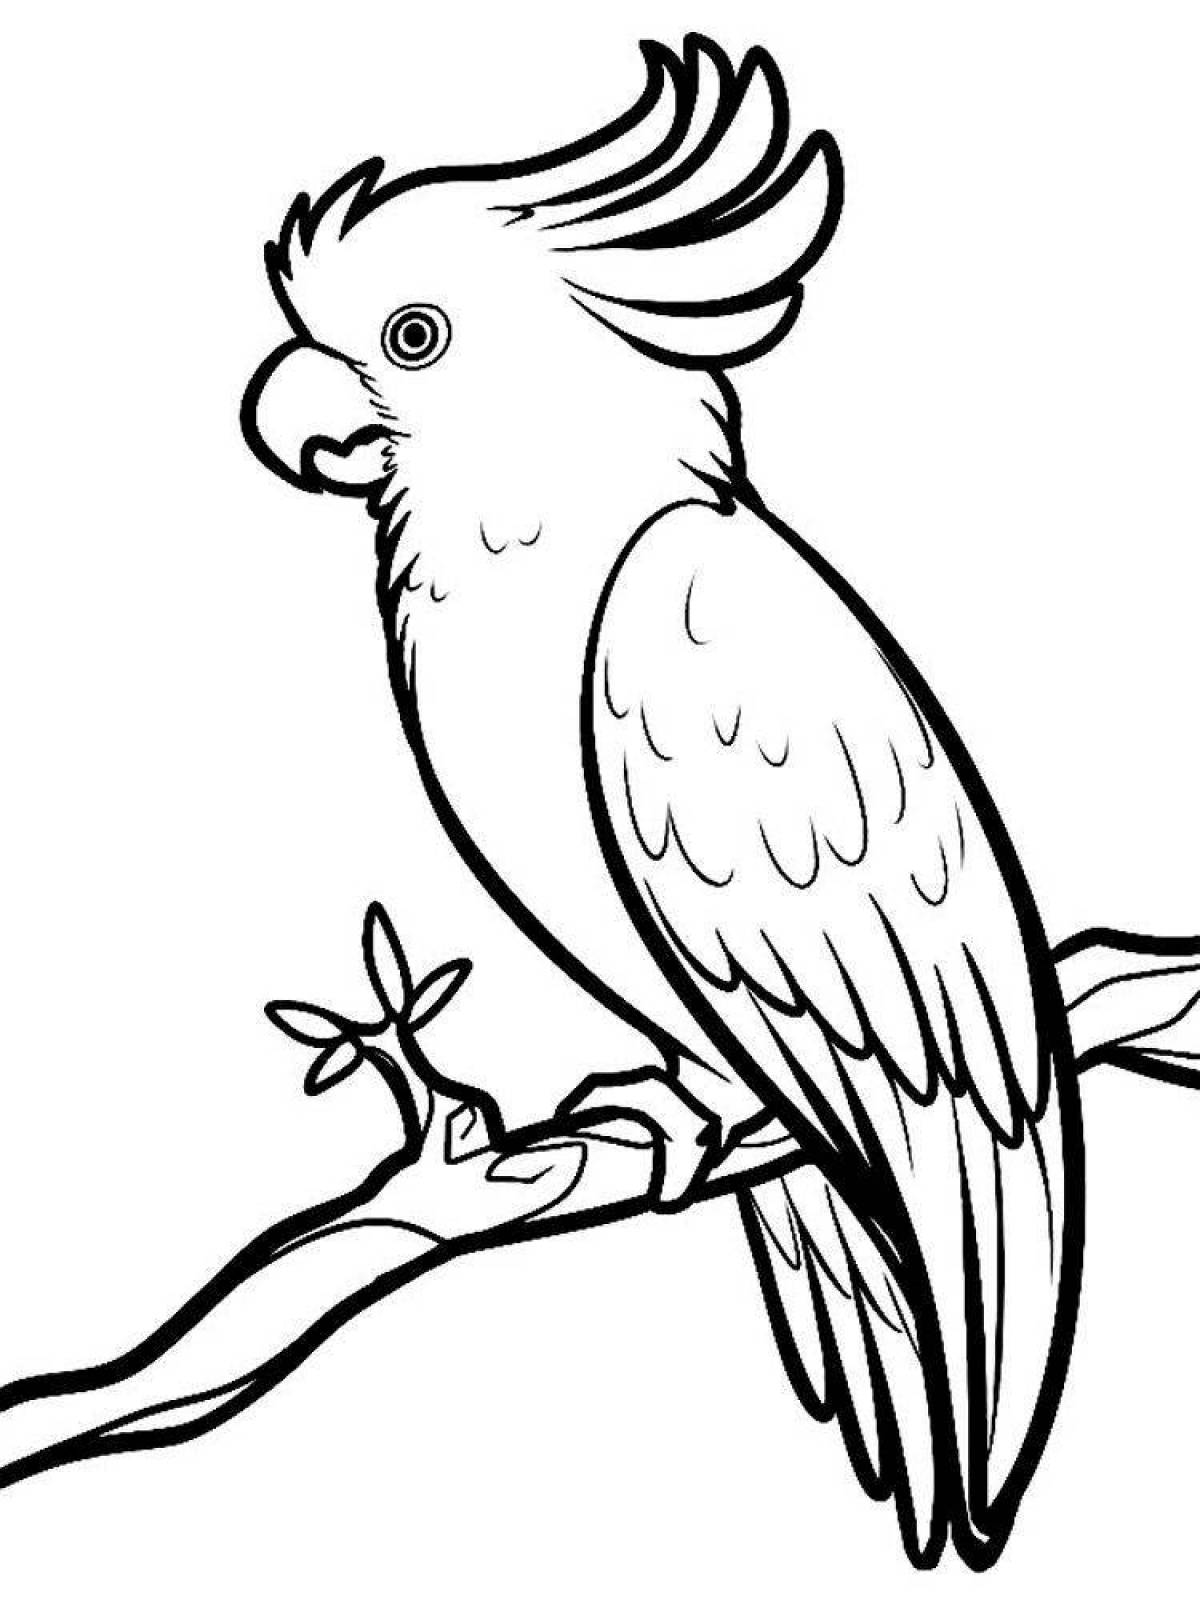 Adorable cockatoo coloring page